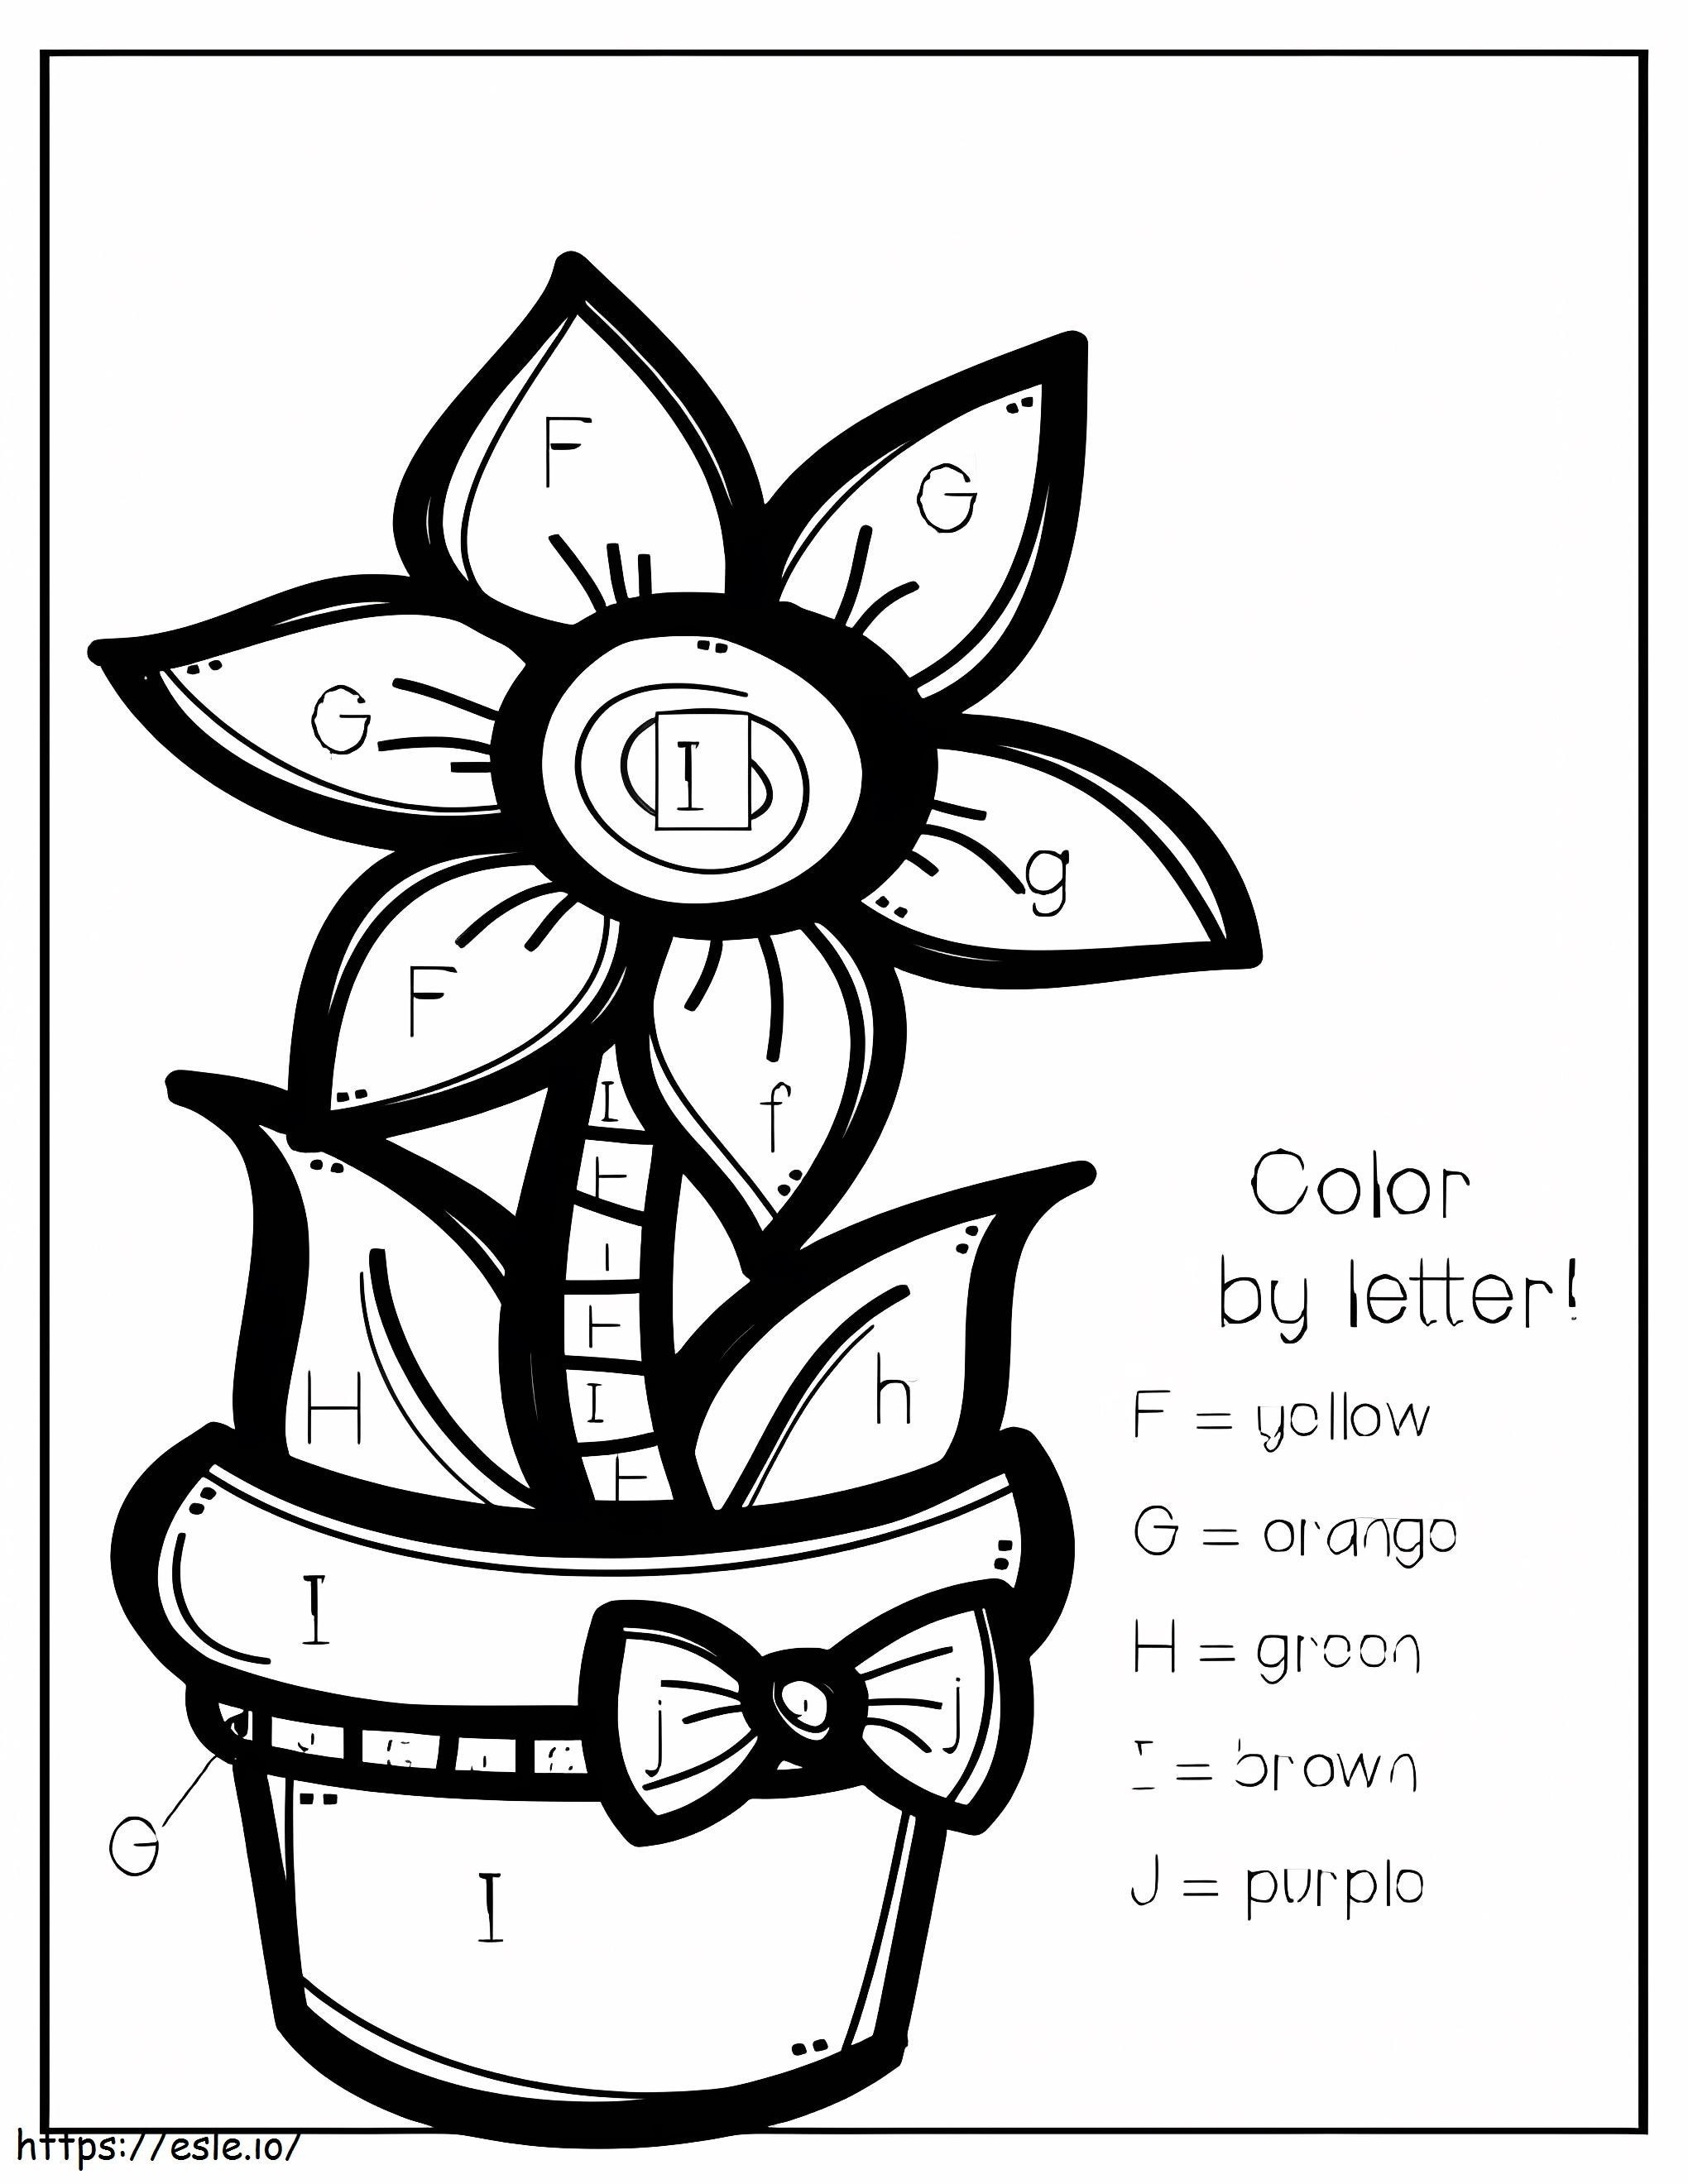 Color de flor por letras para colorear